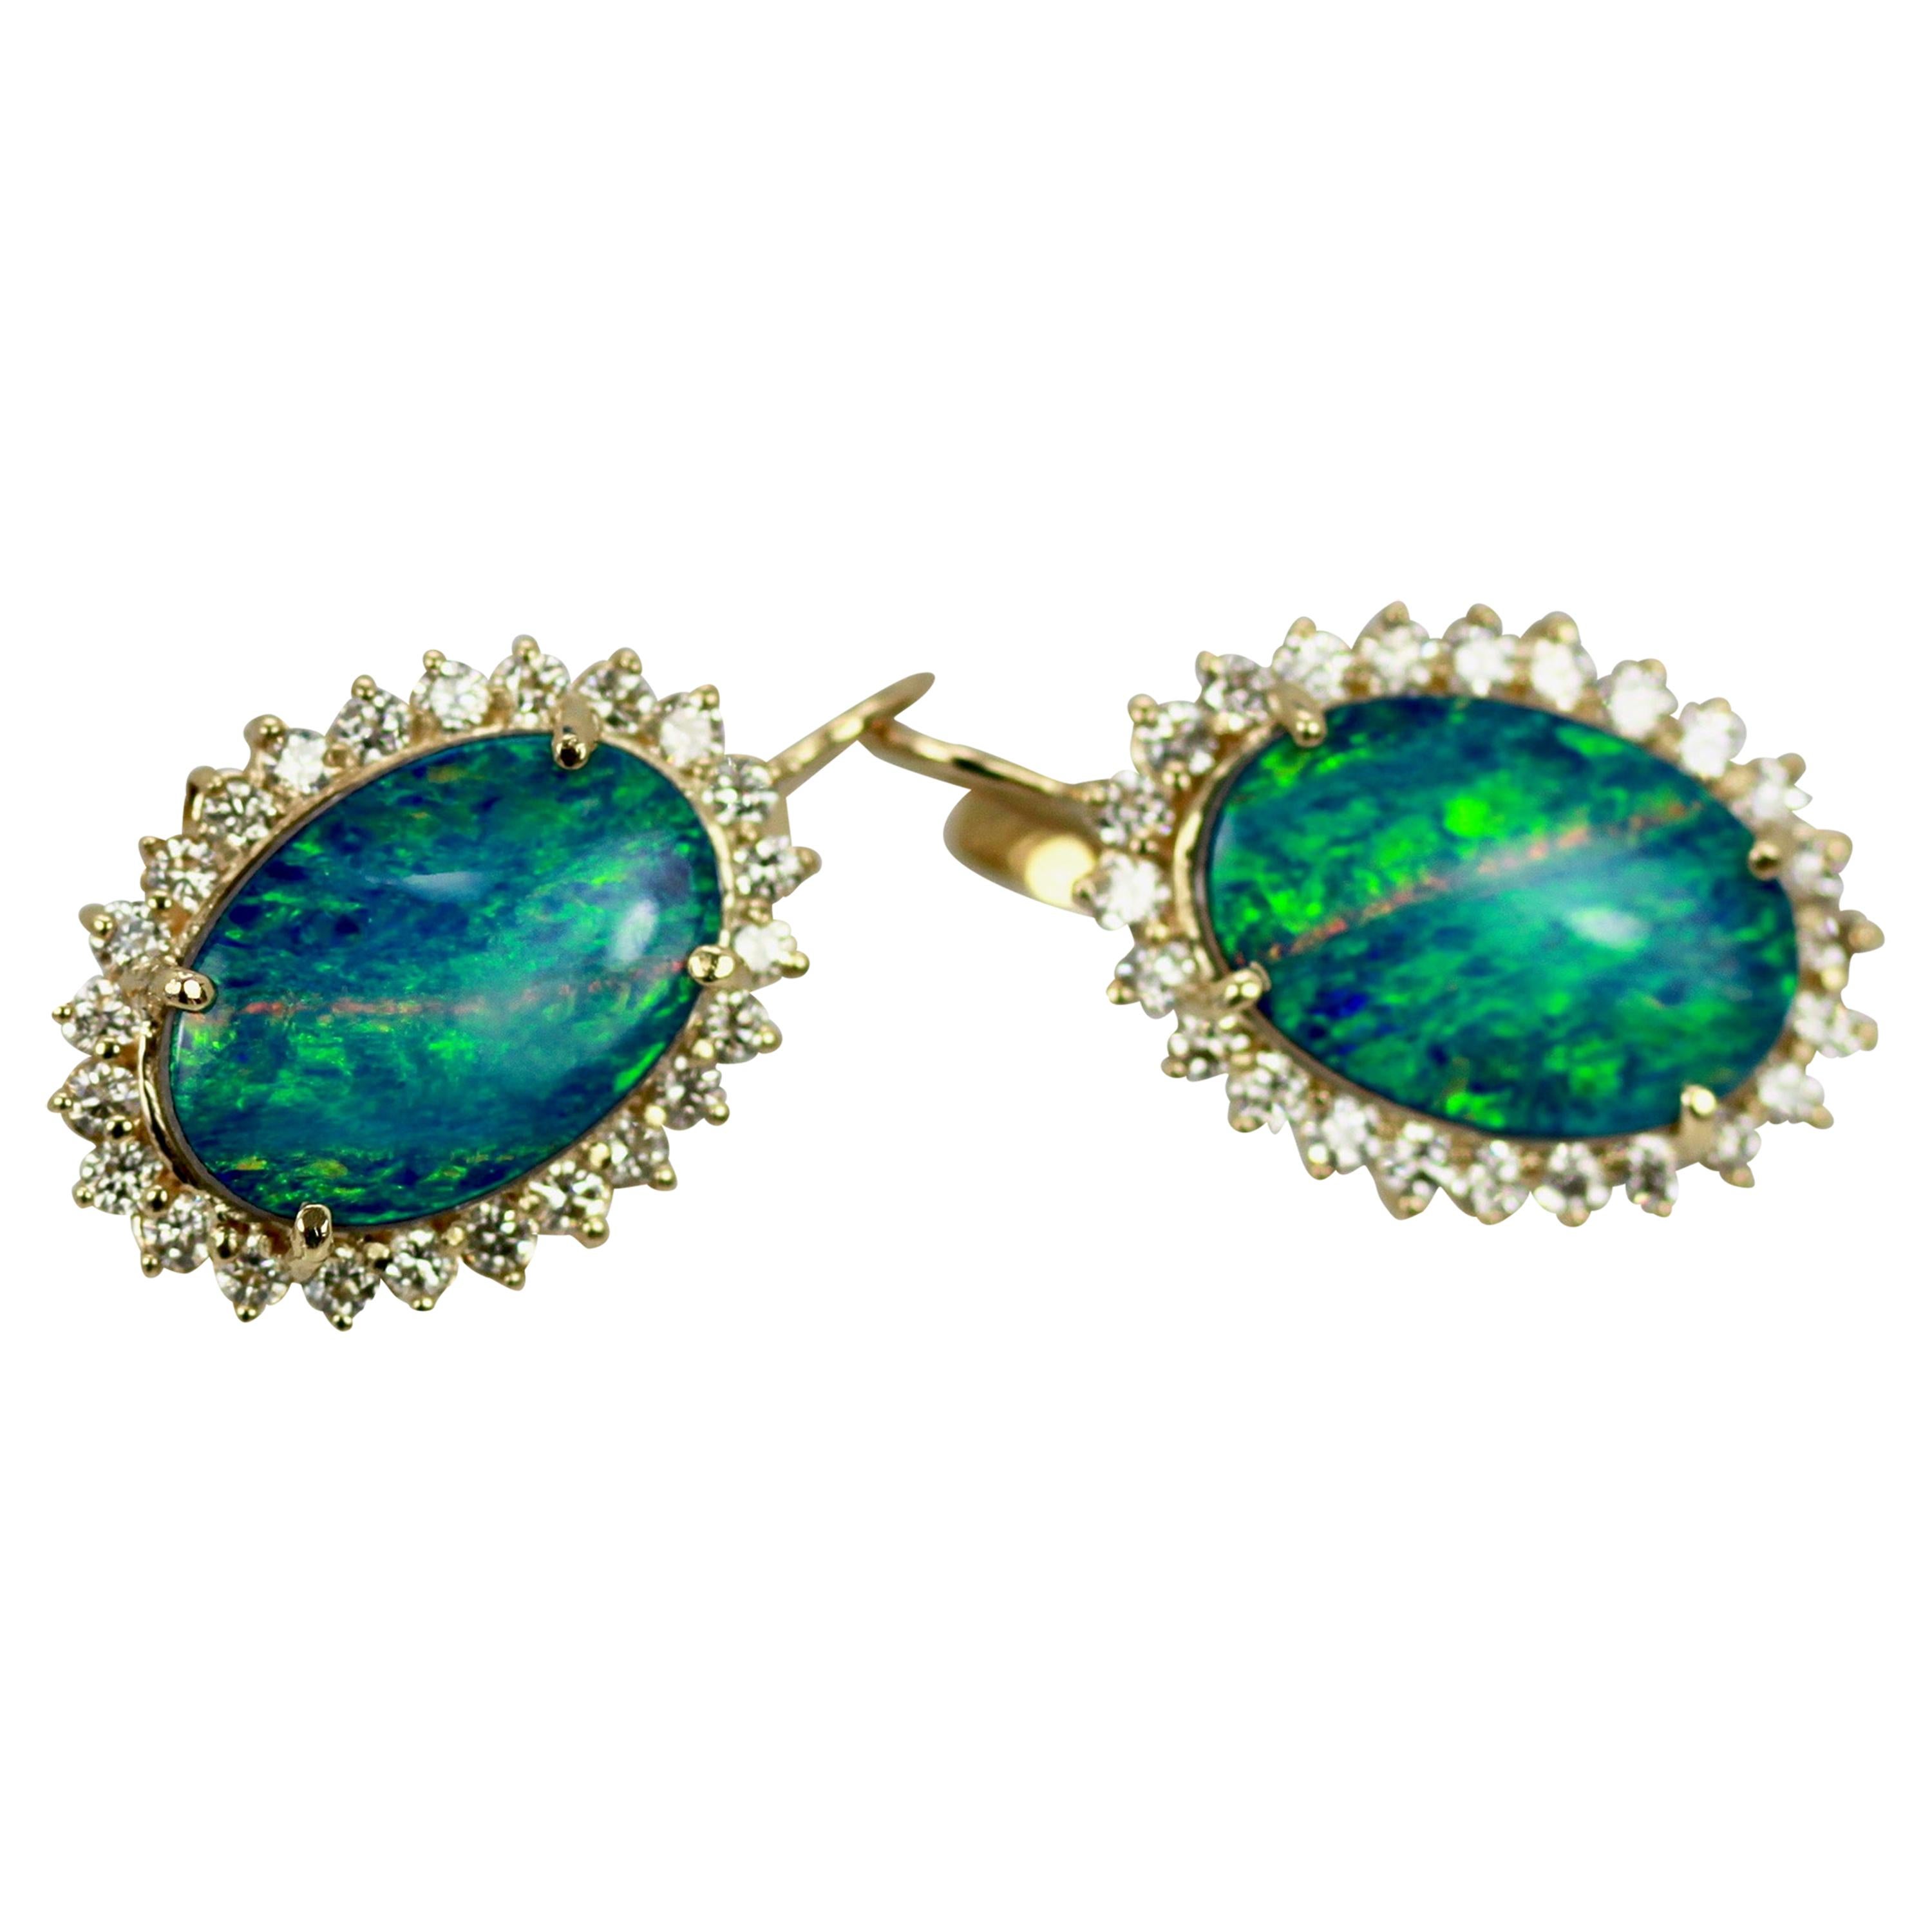 Diese Black Opal Ohrringe sind oval und mit einem Diamanten umgeben.  Die Opale sind 18,54 mm x 13,08 mm groß, solide Opale, keine Drillinge oder Dubletten.
Mit der Einfassung aus Diamanten messen sie 23,26 mm x 17,51 mm.  Diese wiegen 10,2 Gramm